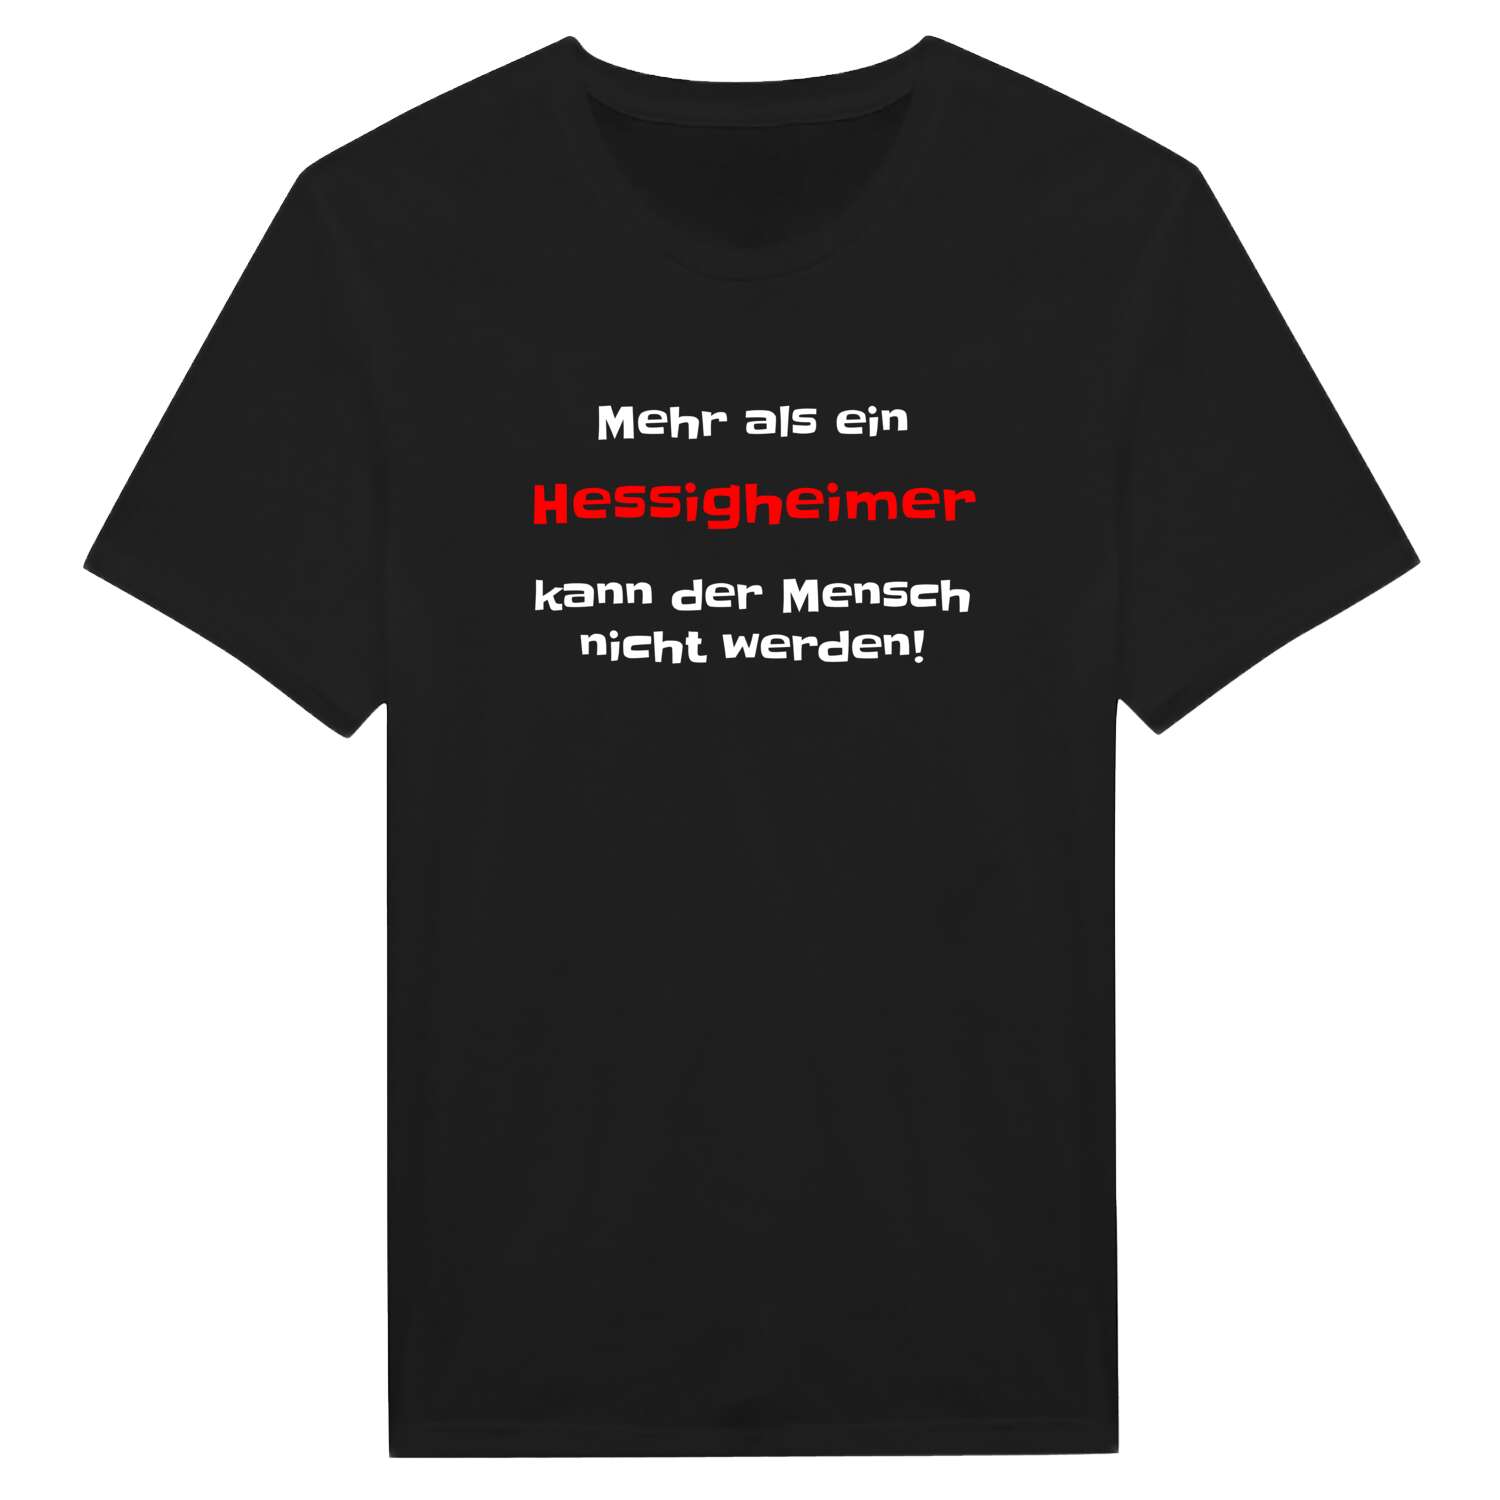 Hessigheim T-Shirt »Mehr als ein«